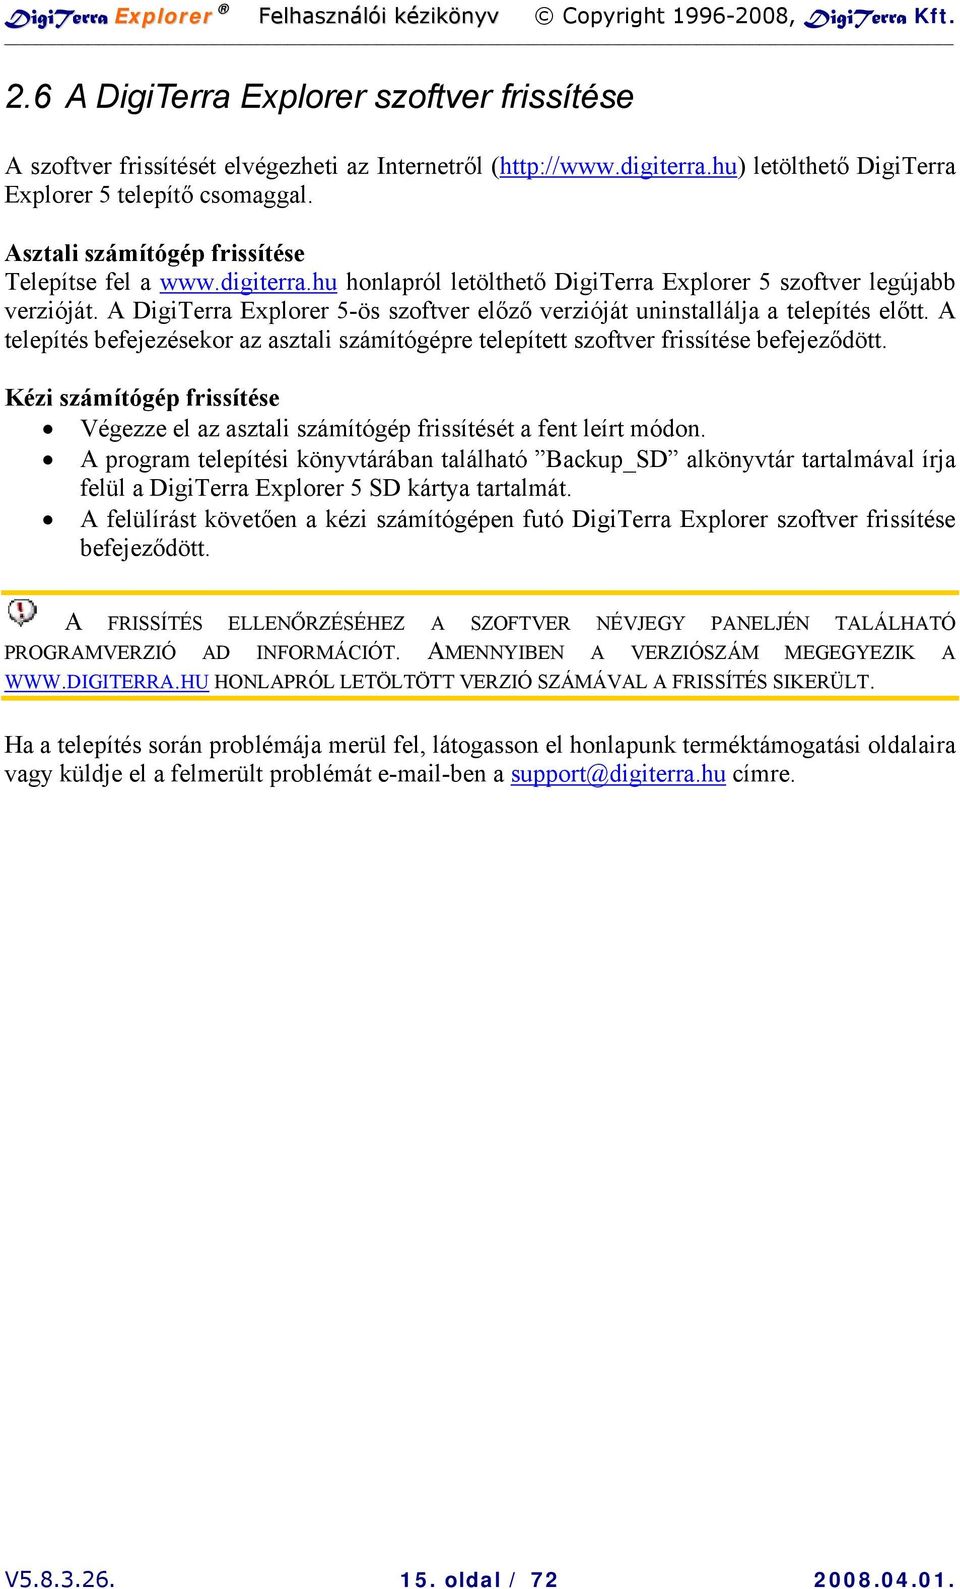 A DigiTerra Explorer 5-ös szoftver előző verzióját uninstallálja a telepítés előtt. A telepítés befejezésekor az asztali számítógépre telepített szoftver frissítése befejeződött.